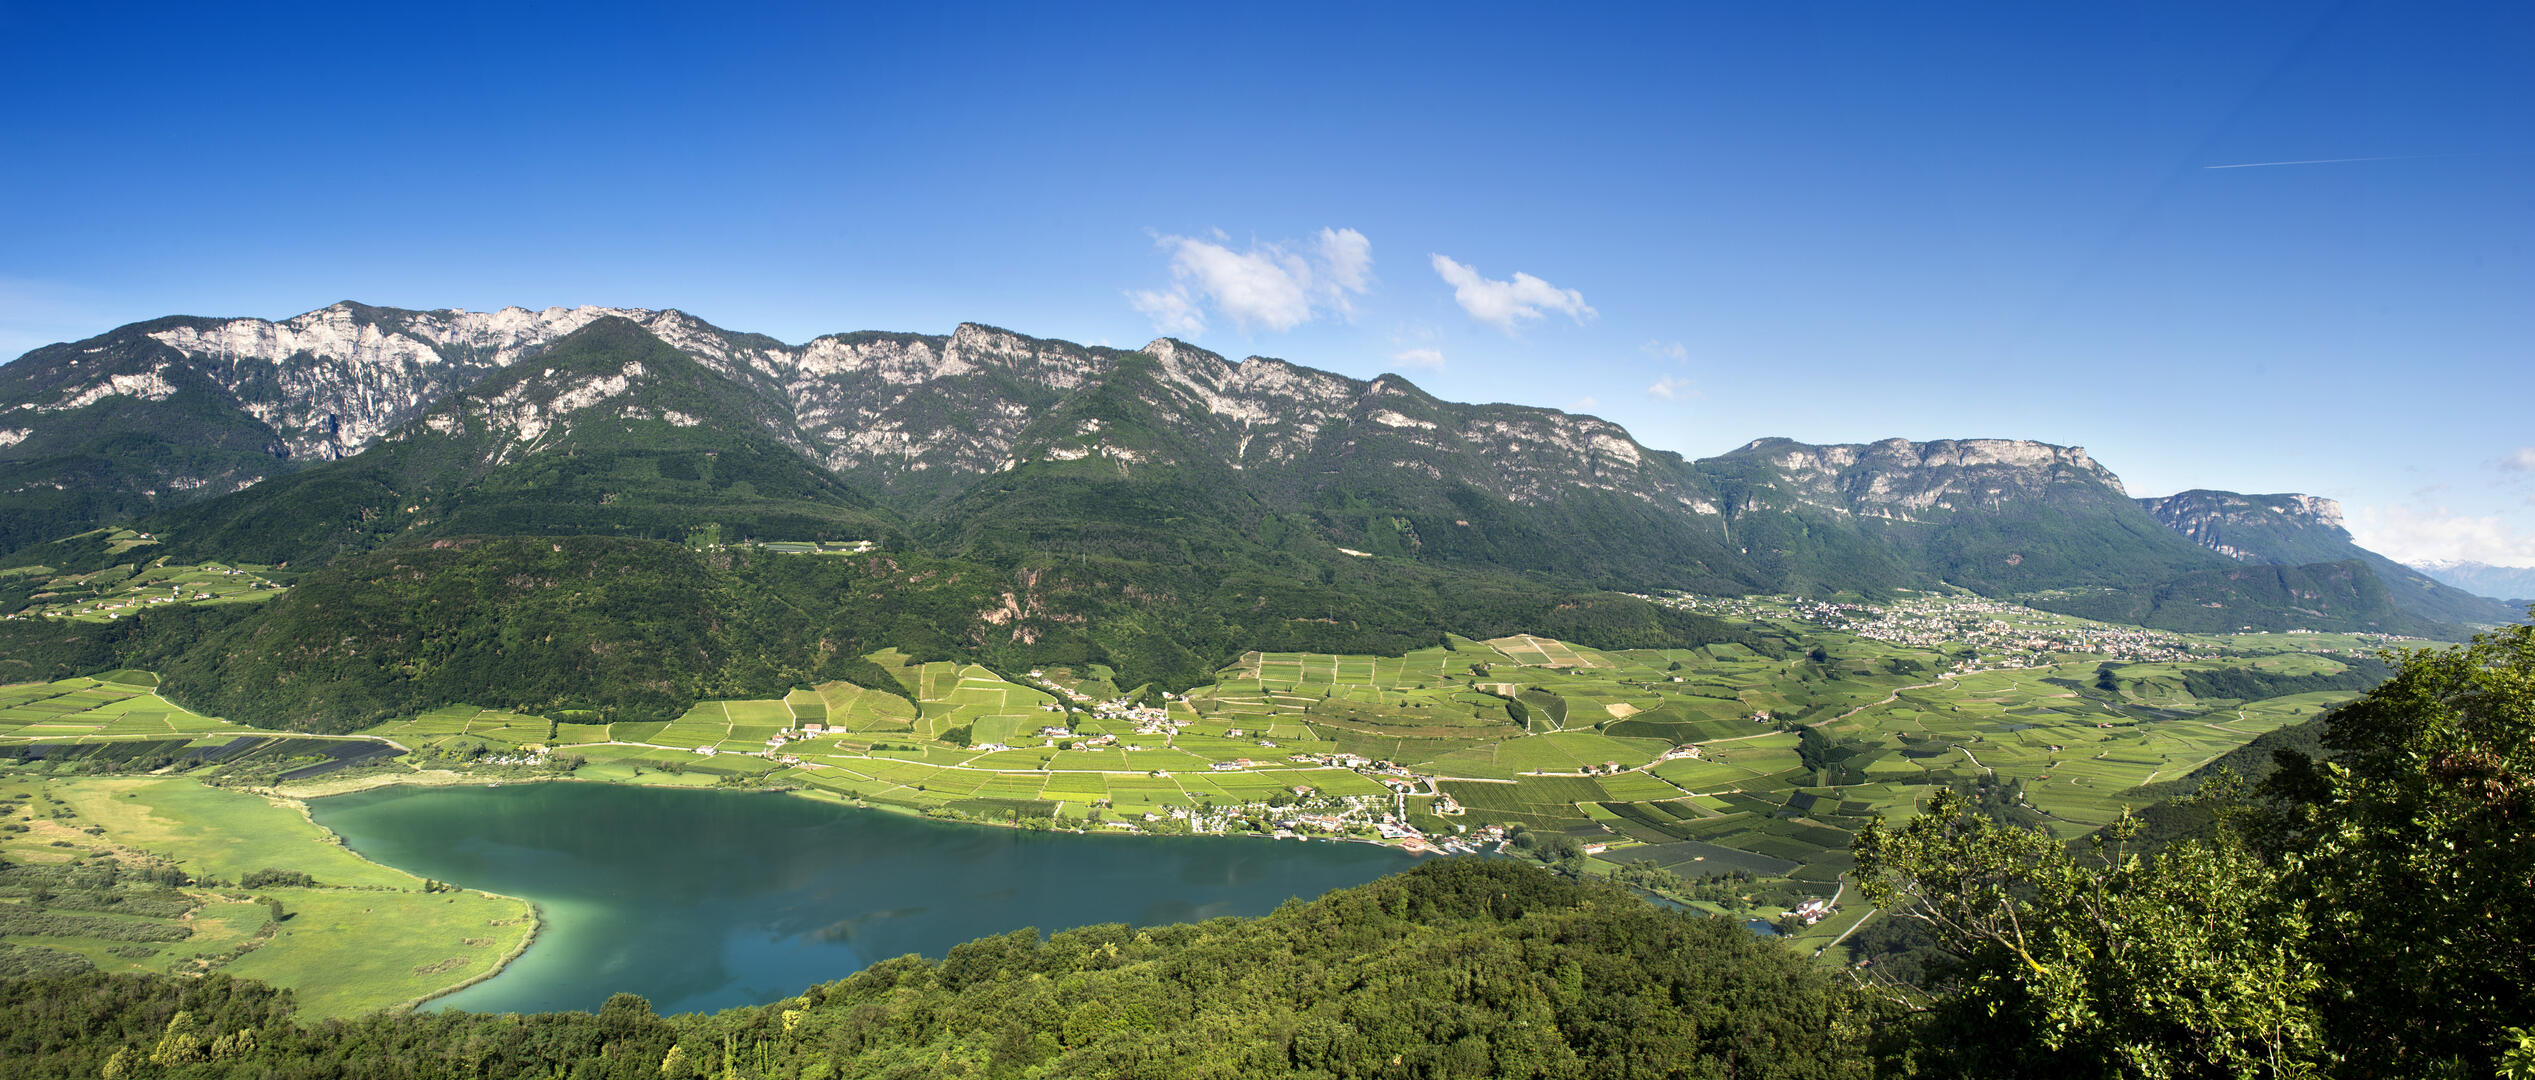 View of Lake Kaltern